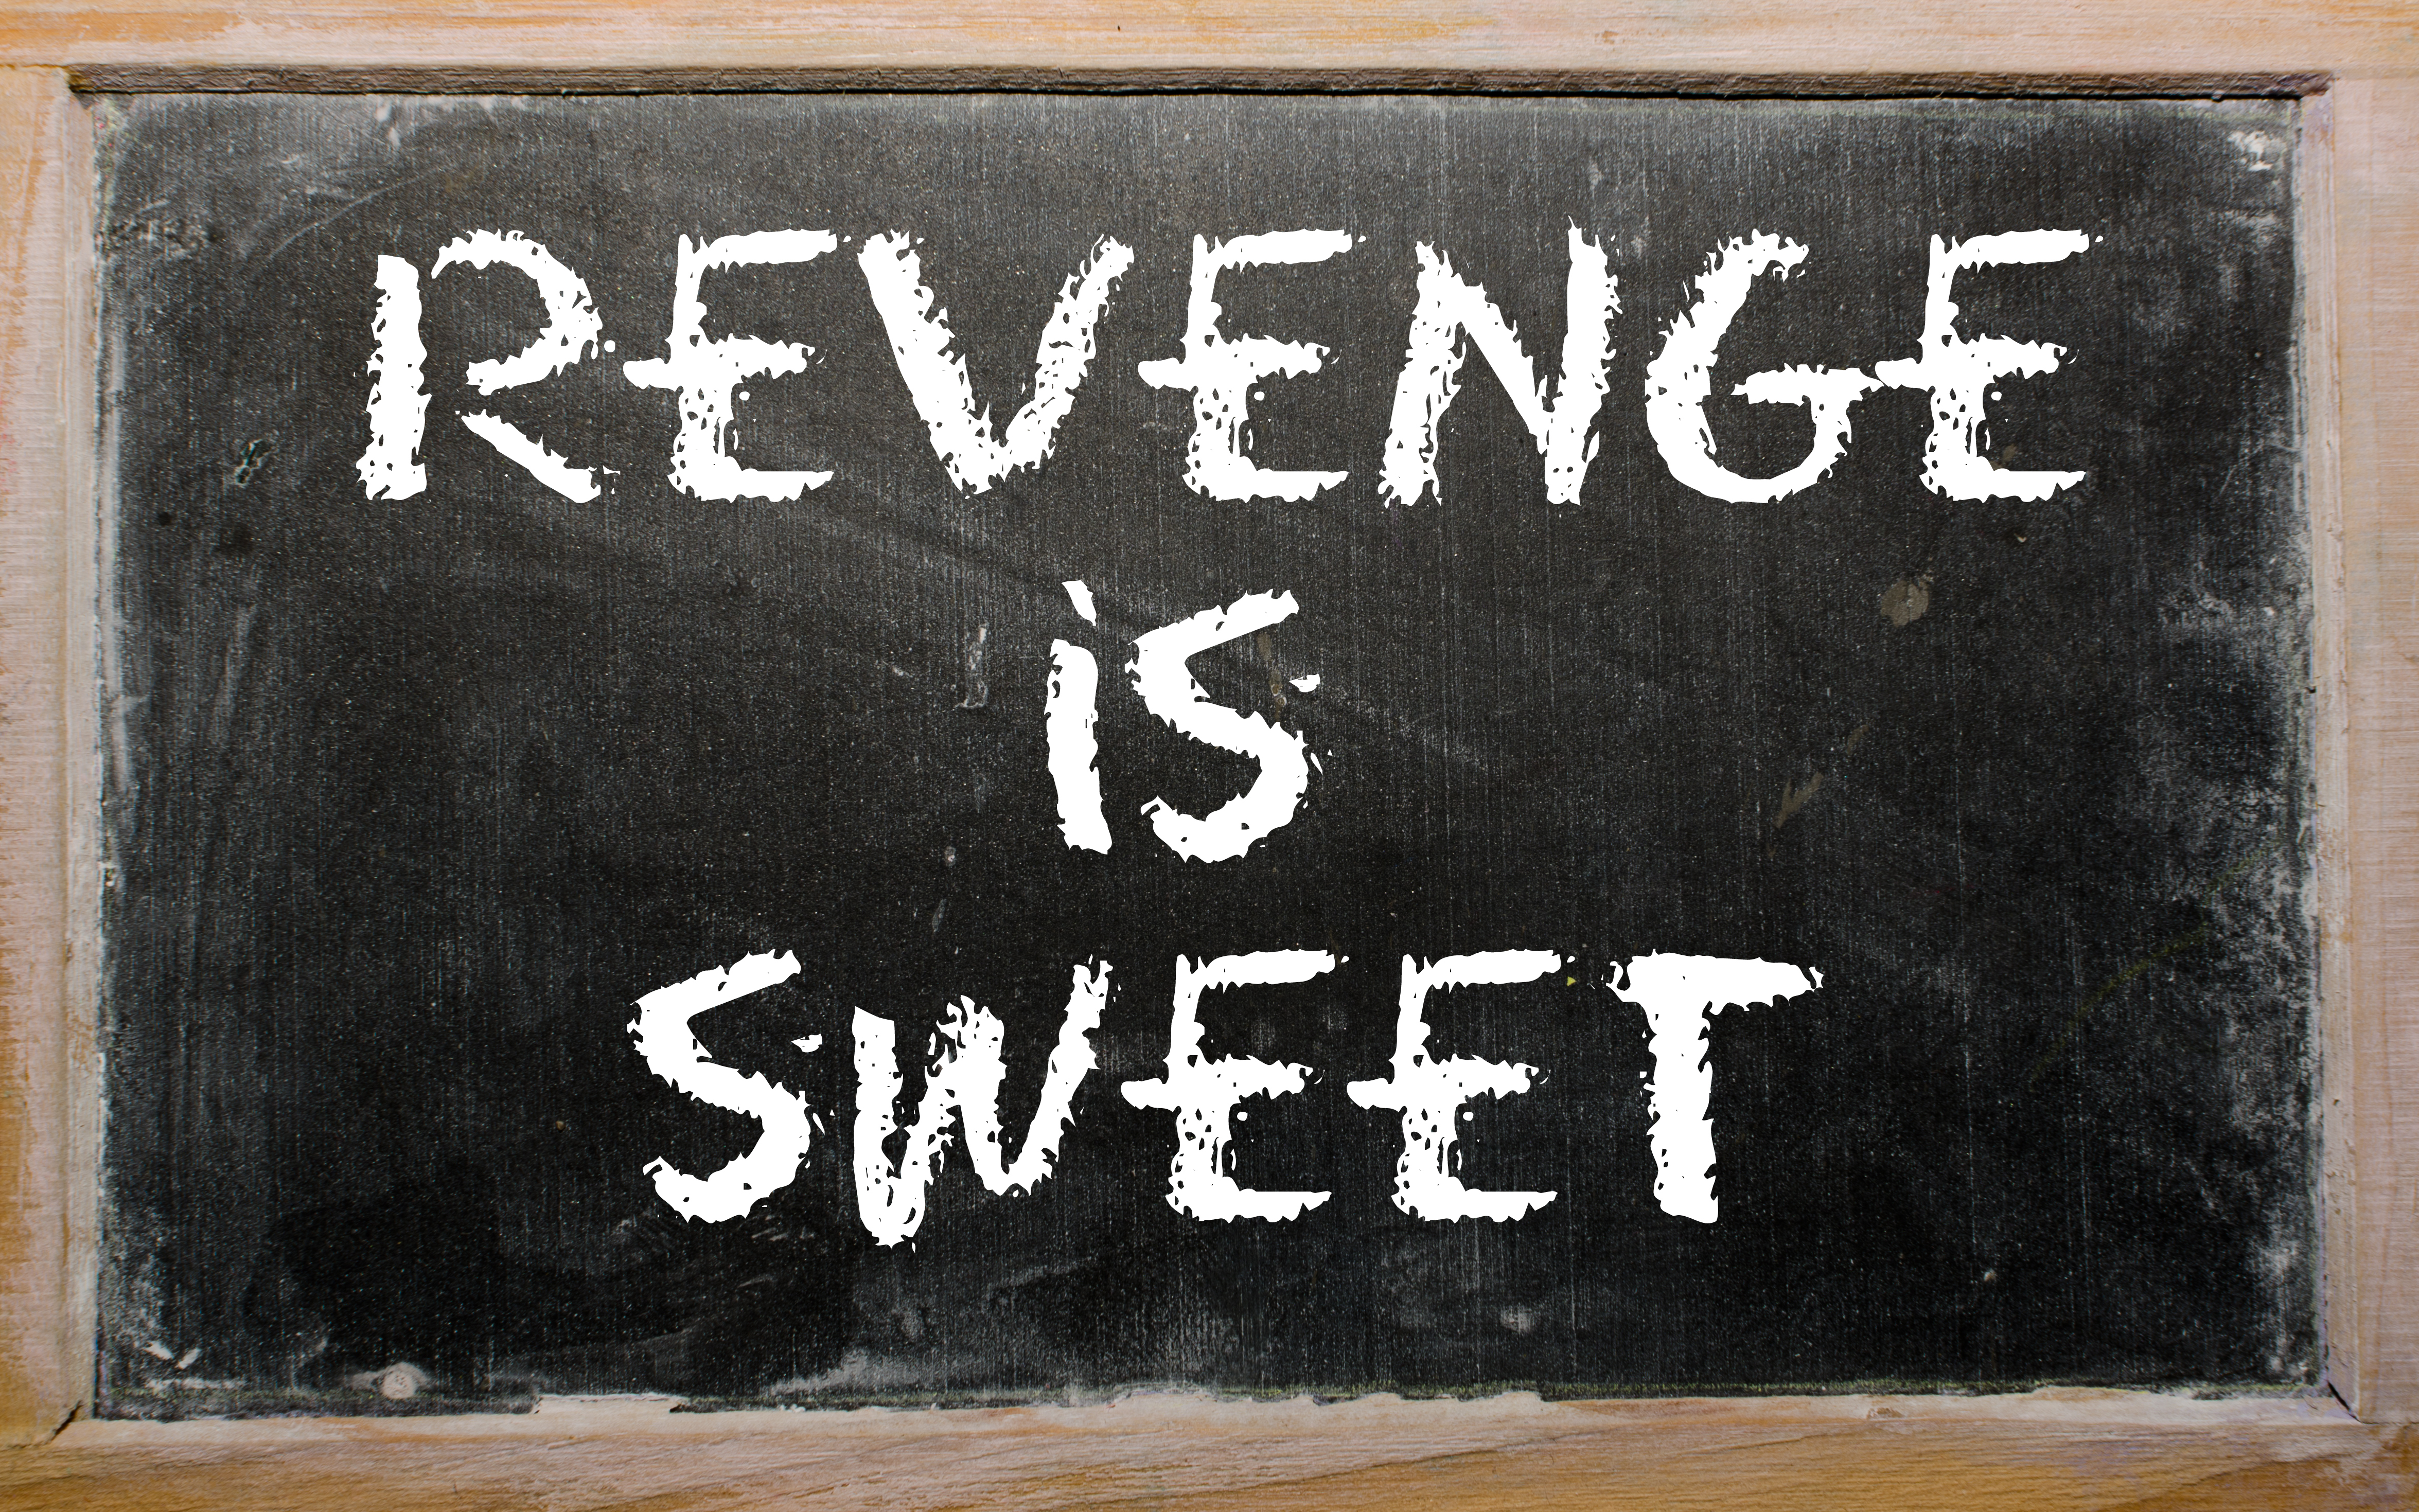 Les mots "La vengeance est douce" écrits sur un tableau noir | Source : Shutterstock